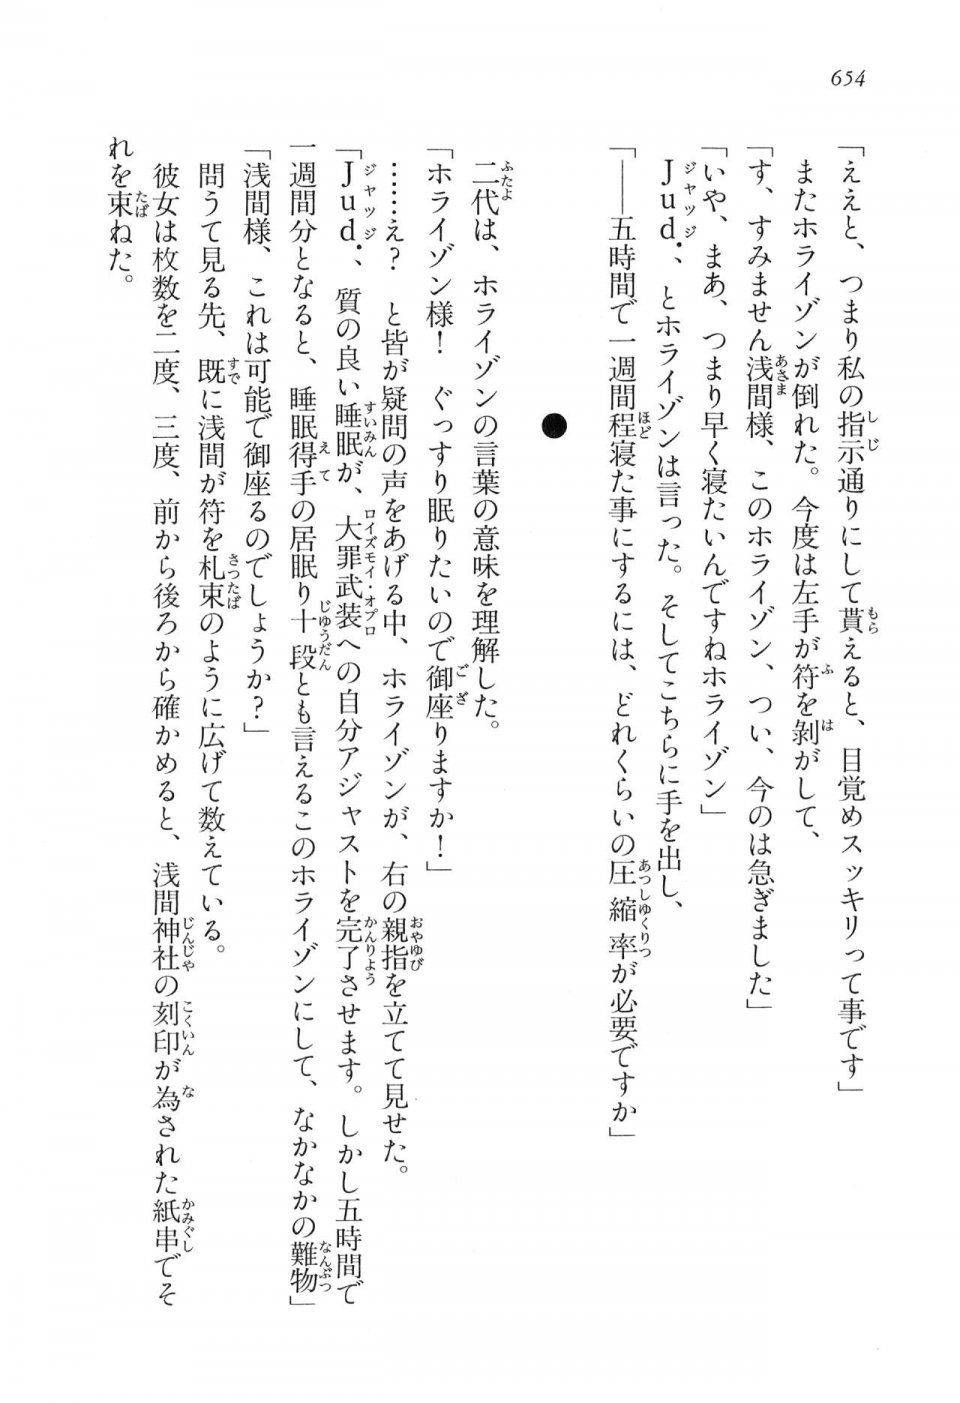 Kyoukai Senjou no Horizon LN Vol 16(7A) - Photo #654